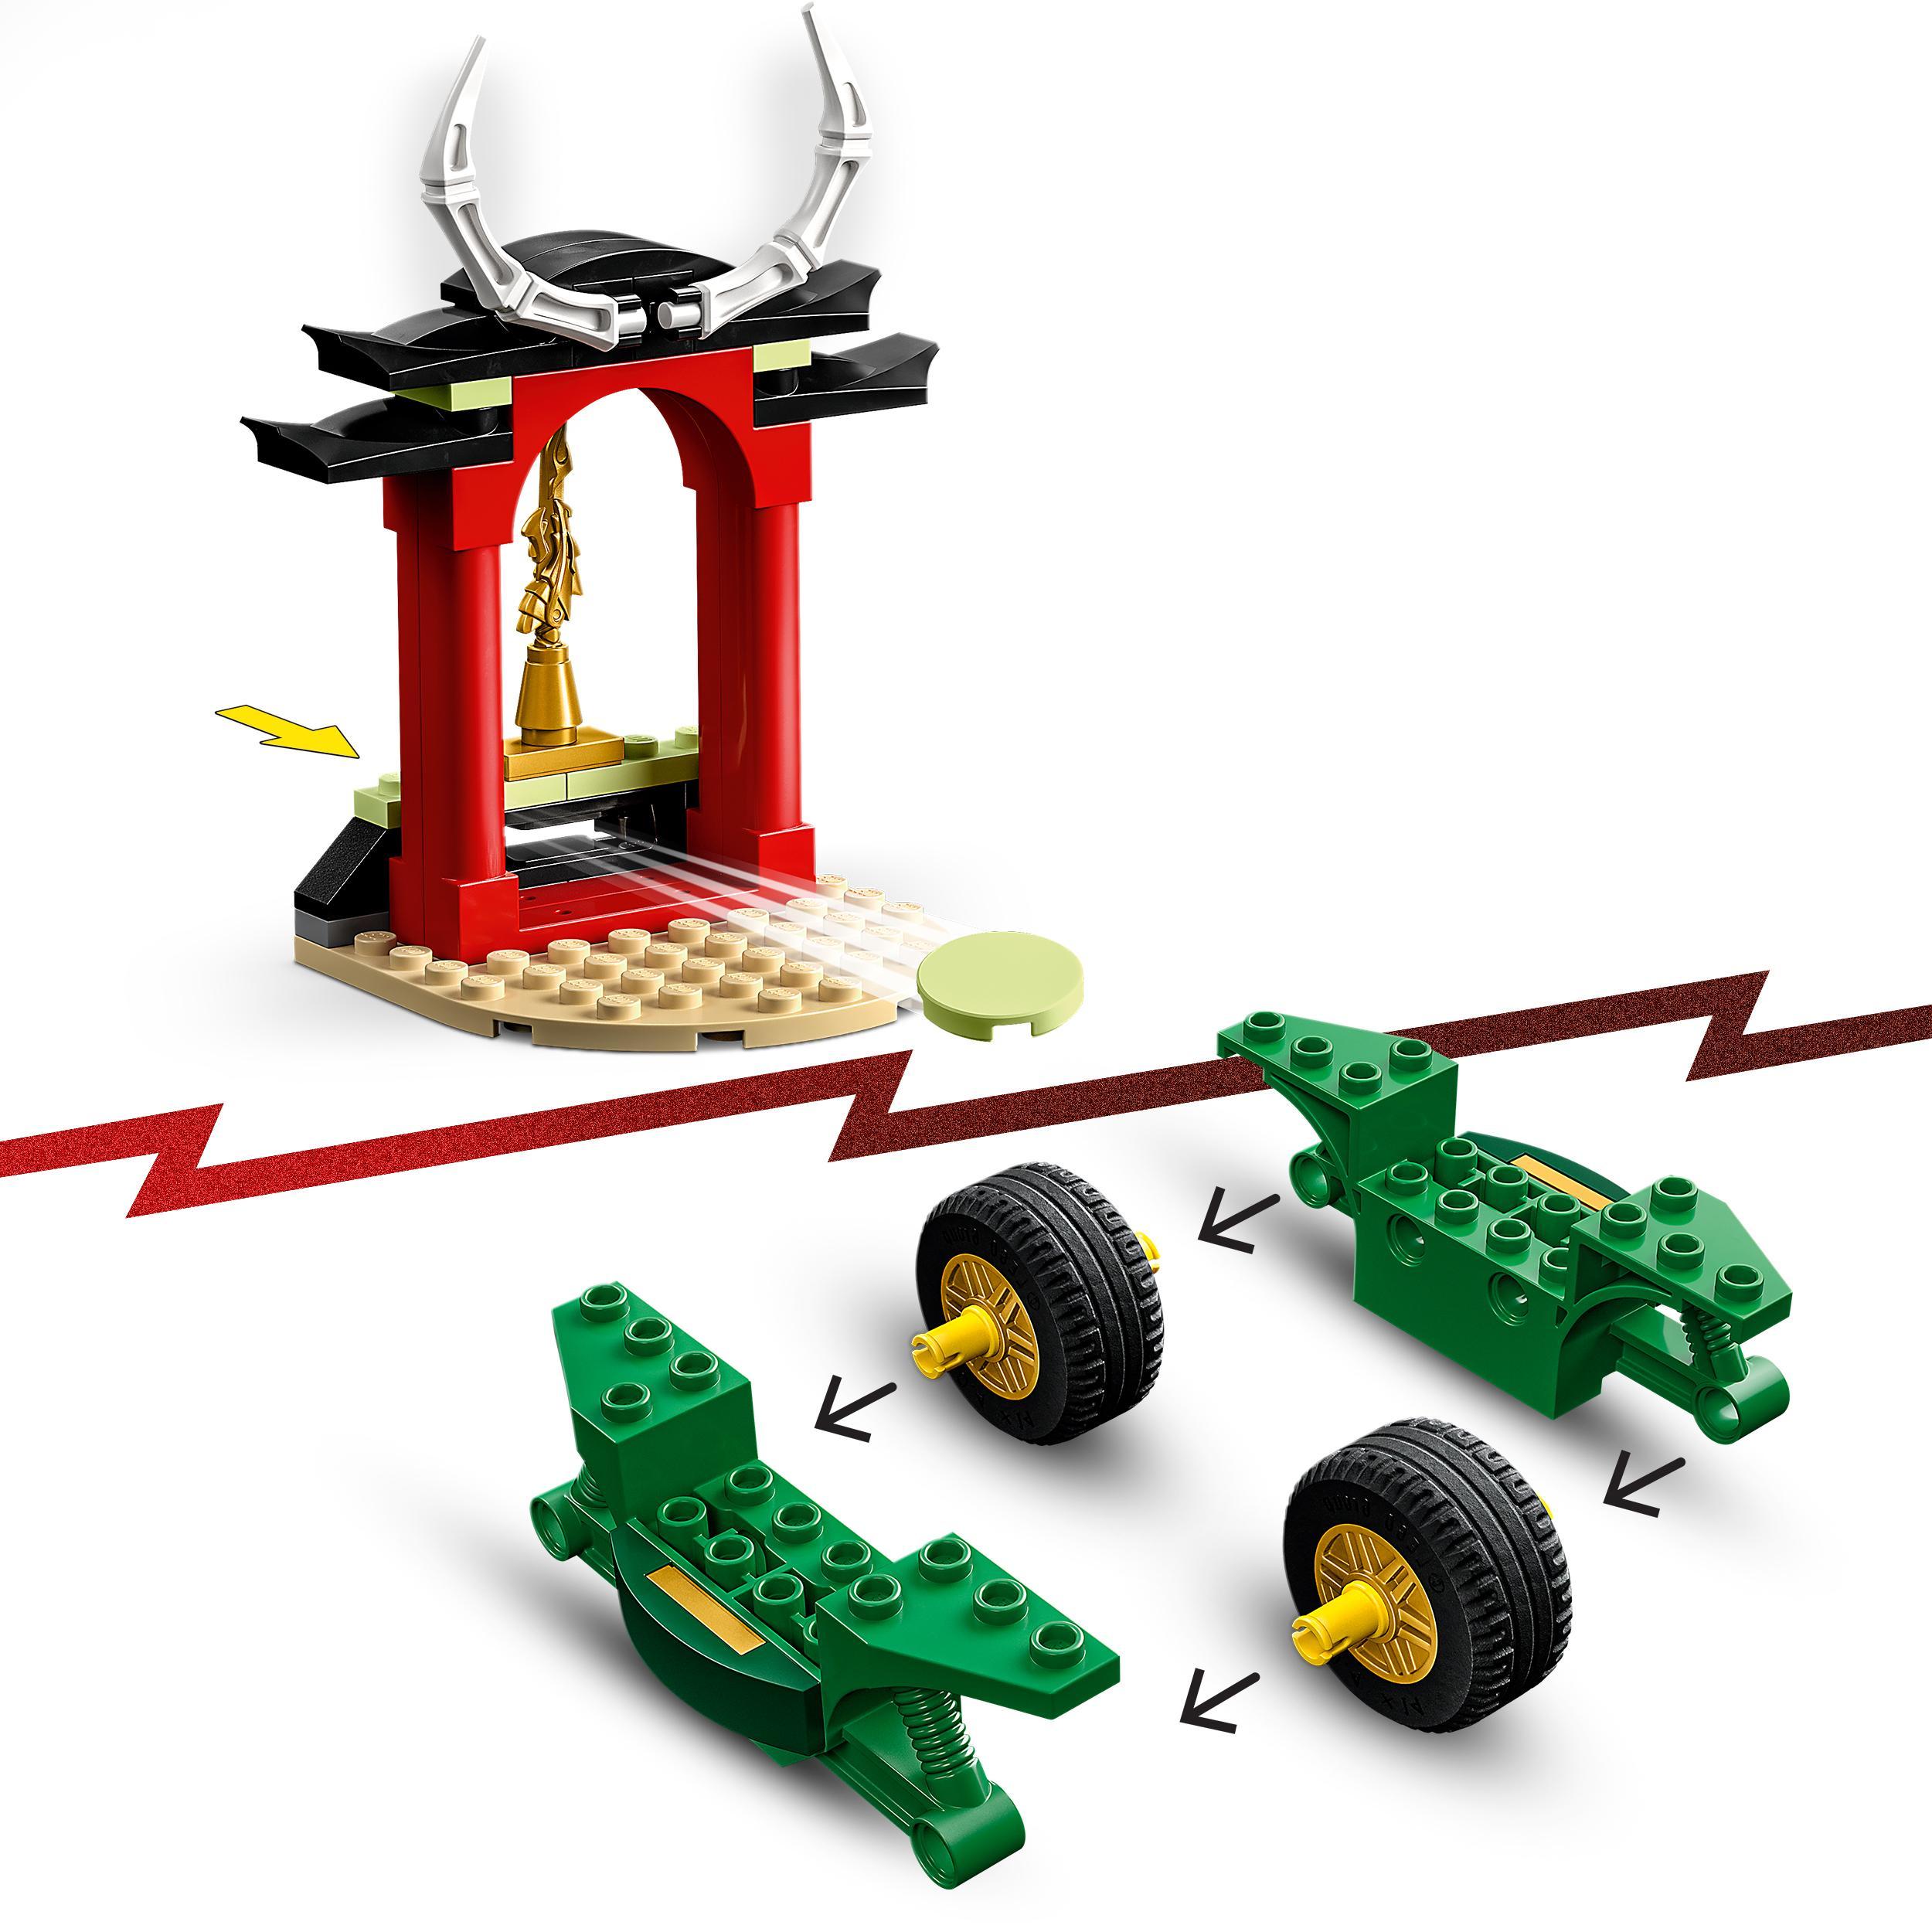 Lego ninjago 71788 moto ninja di lloyd, motocicletta giocattolo per bambini in età prescolare, set di giochi educativi 4+ - LEGO NINJAGO